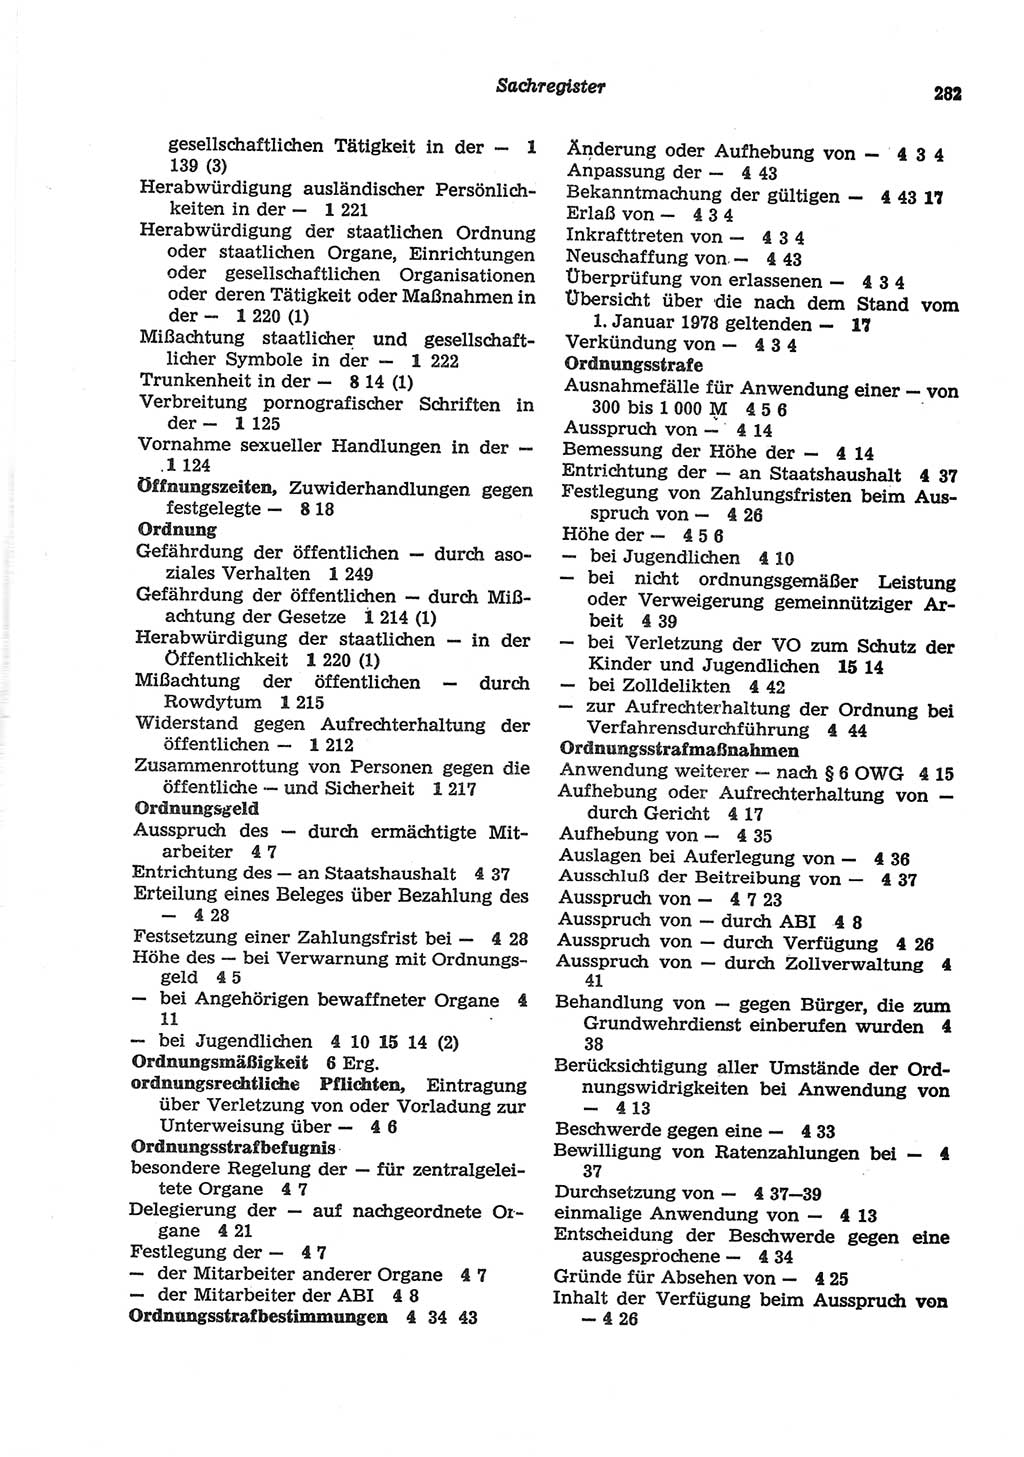 Strafgesetzbuch (StGB) der Deutschen Demokratischen Republik (DDR) und angrenzende Gesetze und Bestimmungen 1977, Seite 282 (StGB DDR Ges. Best. 1977, S. 282)